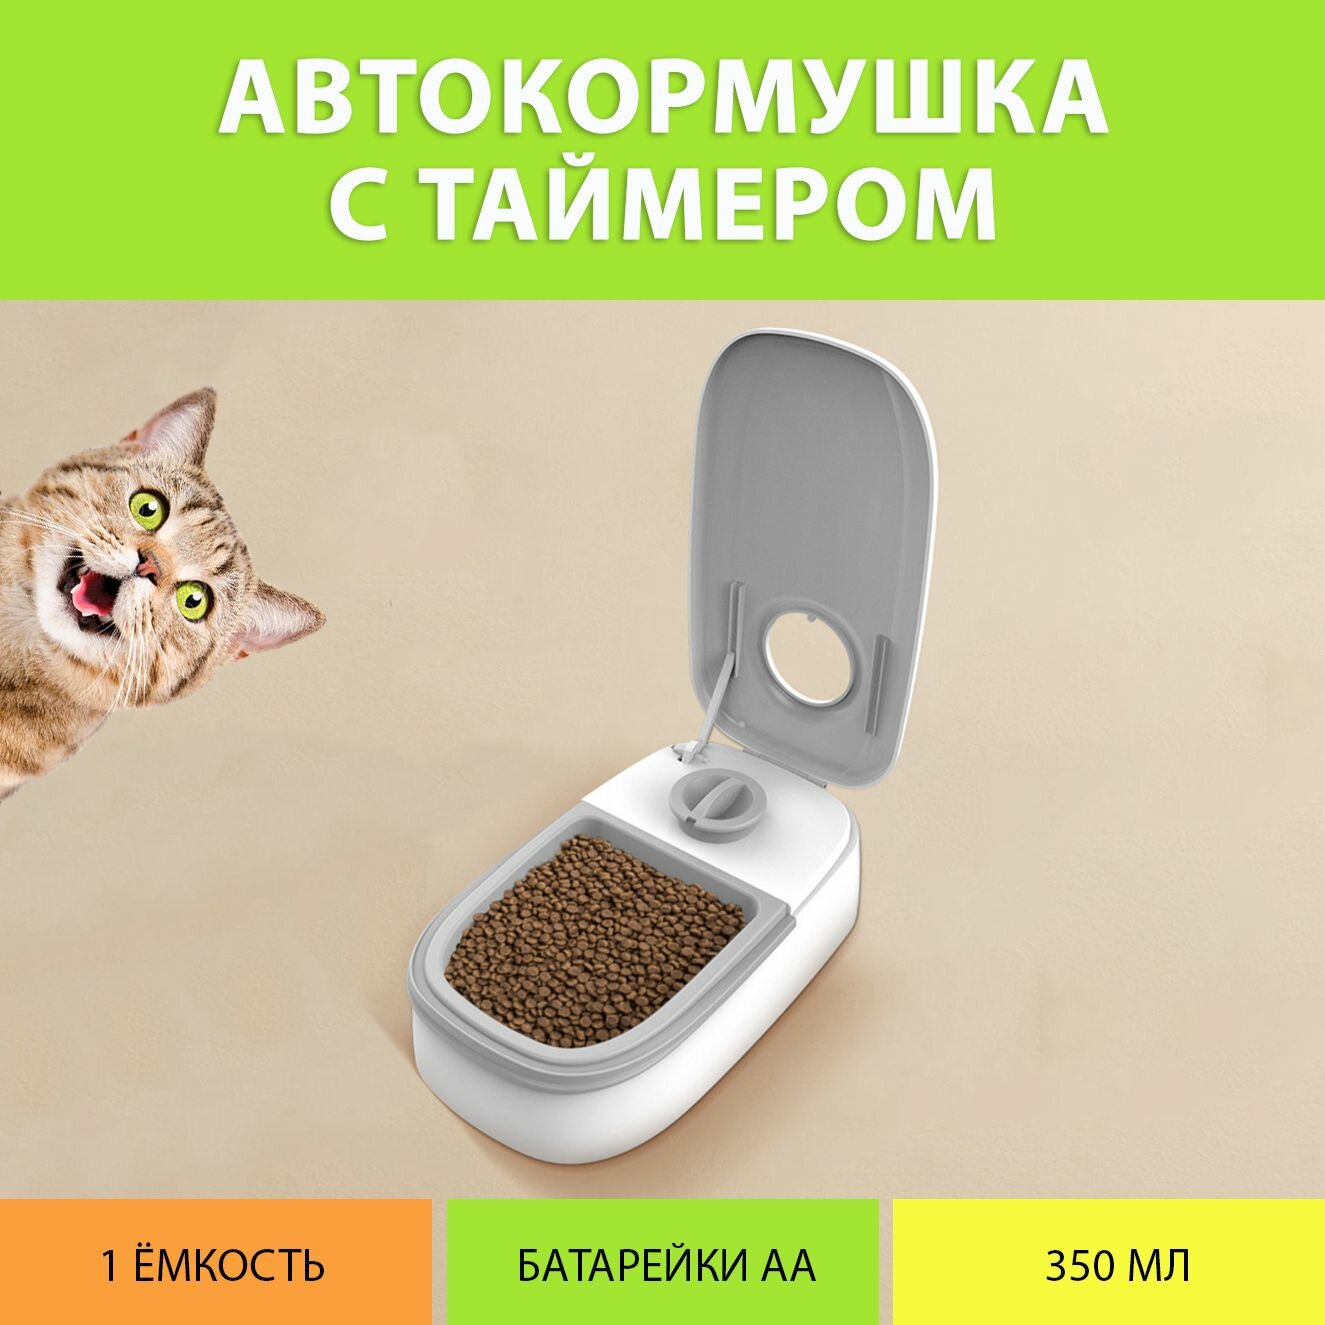 Кормушка автоматическая для влажного корма / Автокормушка для кошек и собак (Одинарная, цвет серый)